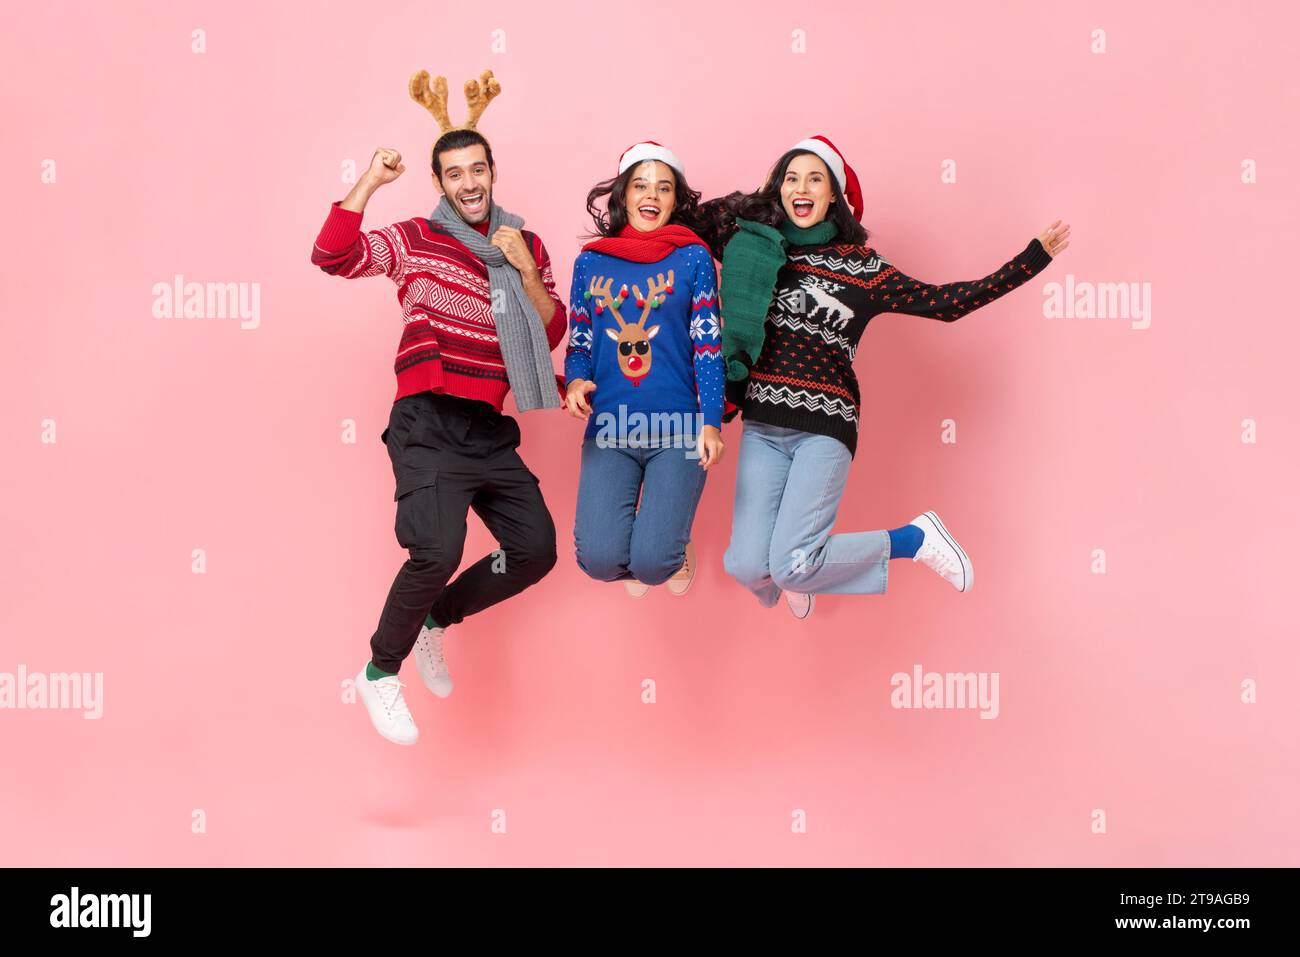 Gruppe glücklicher männlicher und weiblicher Freunde in Weihnachtskleidung, die in rosa Farbe springen, isolierte Hintergrundaufnahme im Studio Stockfoto